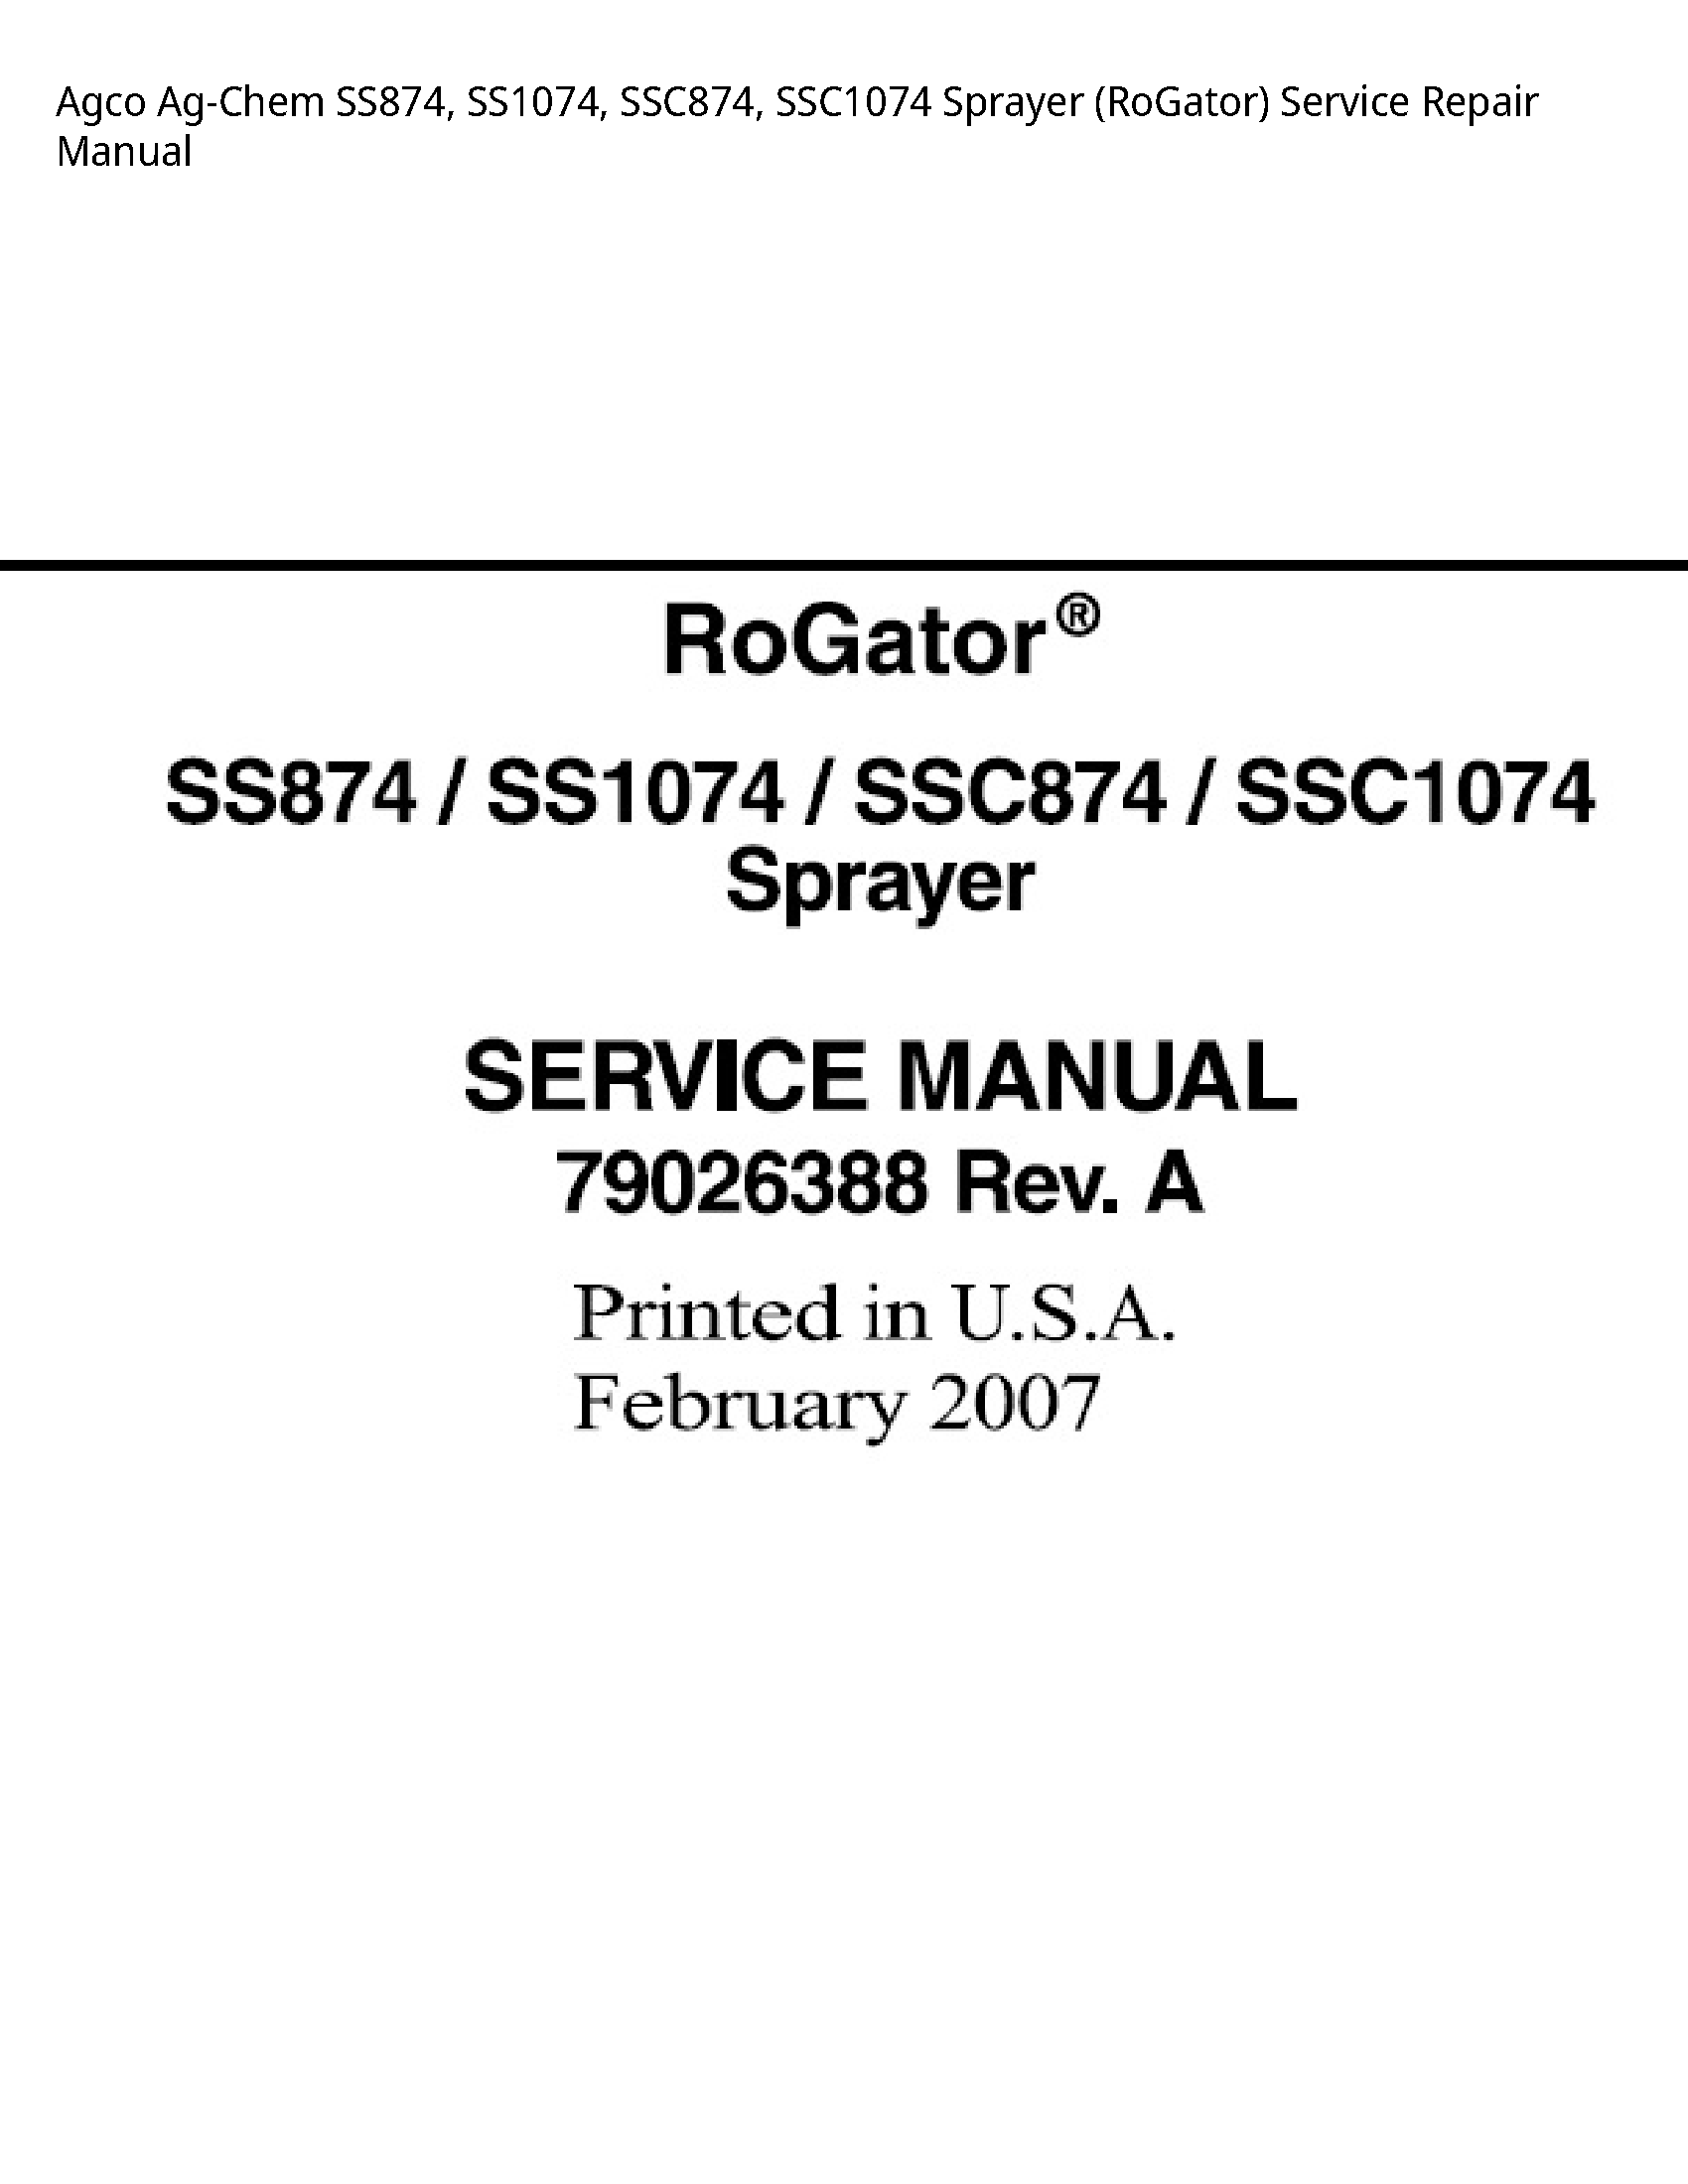 AGCO SS874 Ag-Chem Sprayer (RoGator) manual